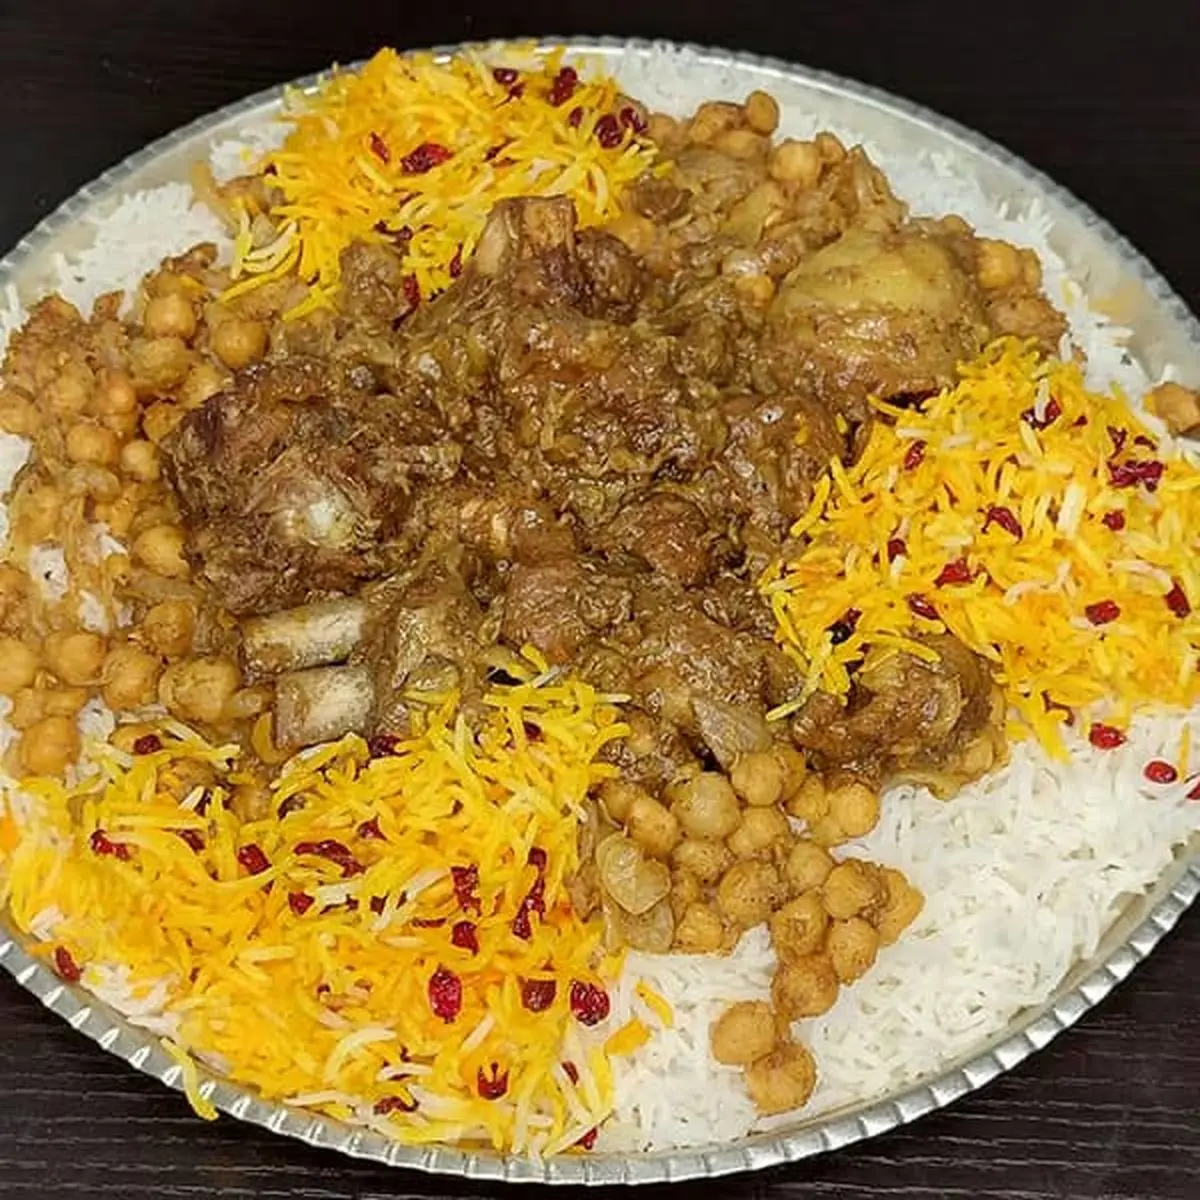 پلو گوشت عربی به روش مجلسی و فوق العاده خوشمزه رو این طوری درست کن!